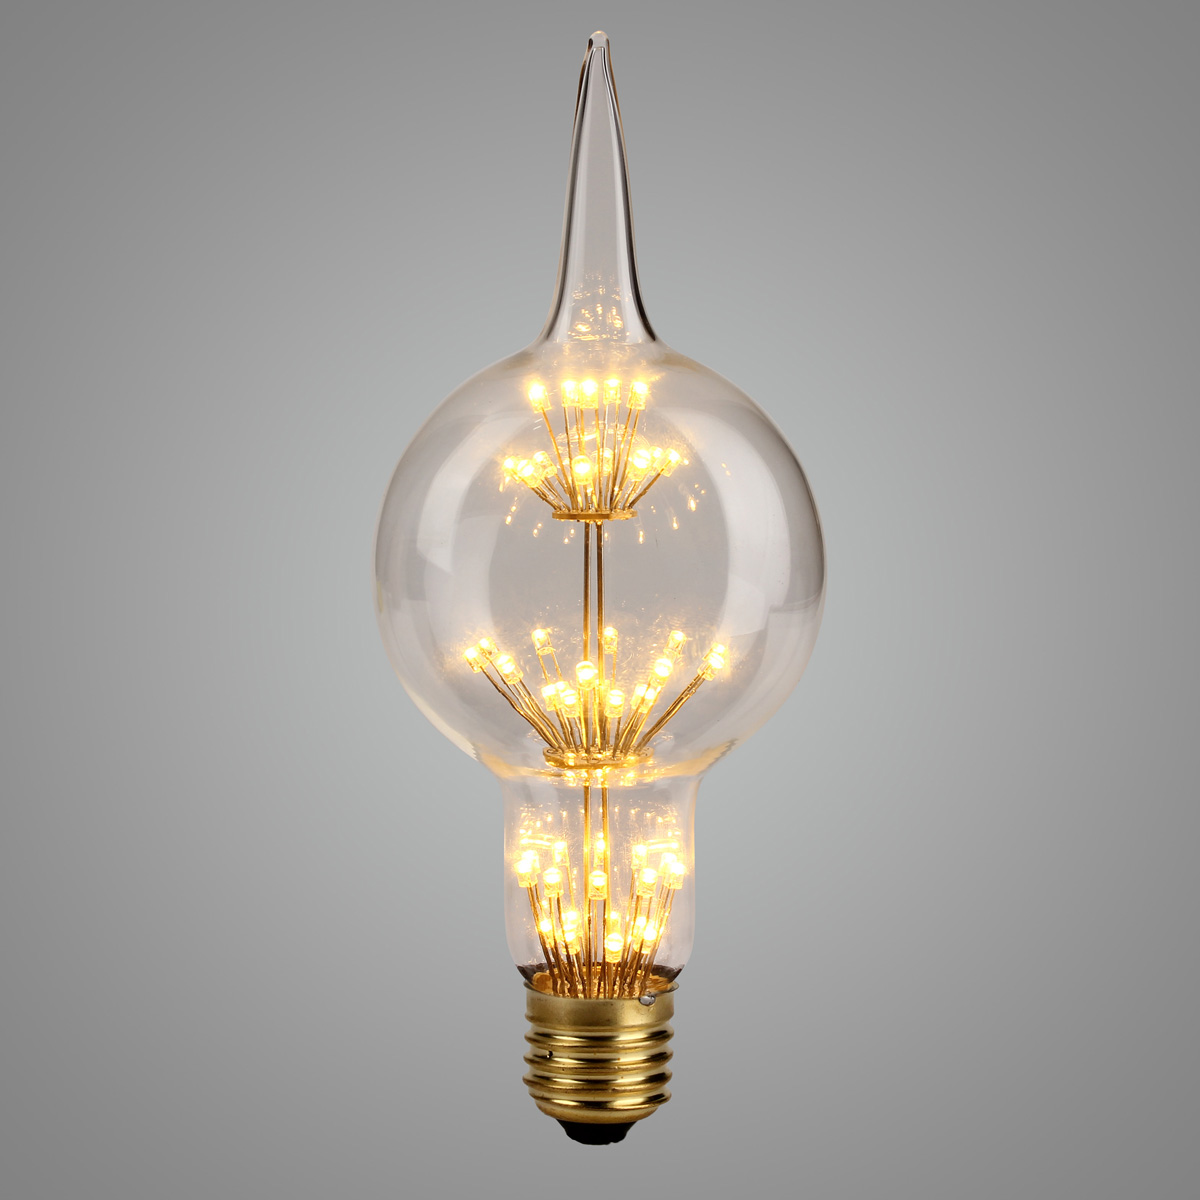 

AC85-265V E27 3W Gourd Style Star Warm White Edison Incandescent Light Bulb for Home Garden